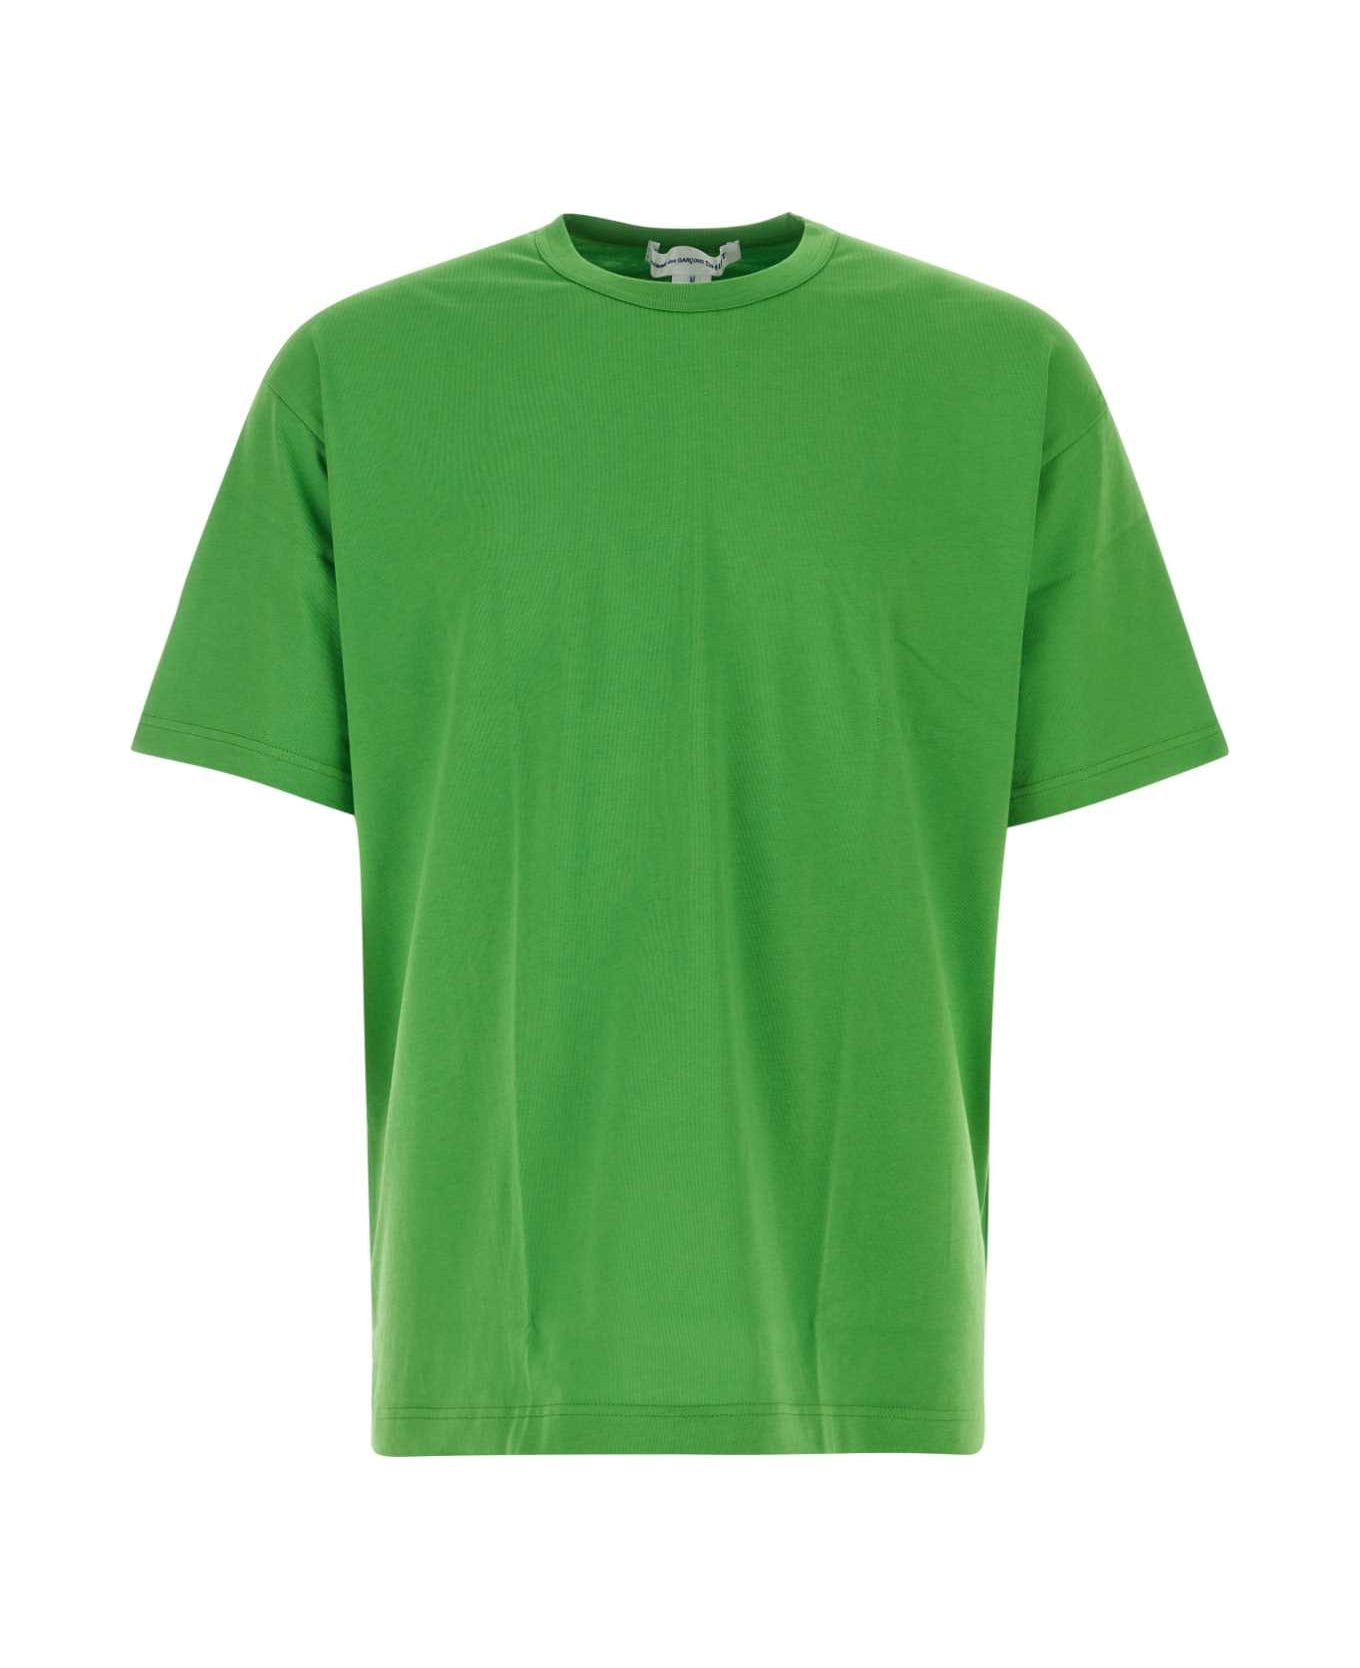 Comme des Garçons Shirt Green Cotton T-shirt - GREEN